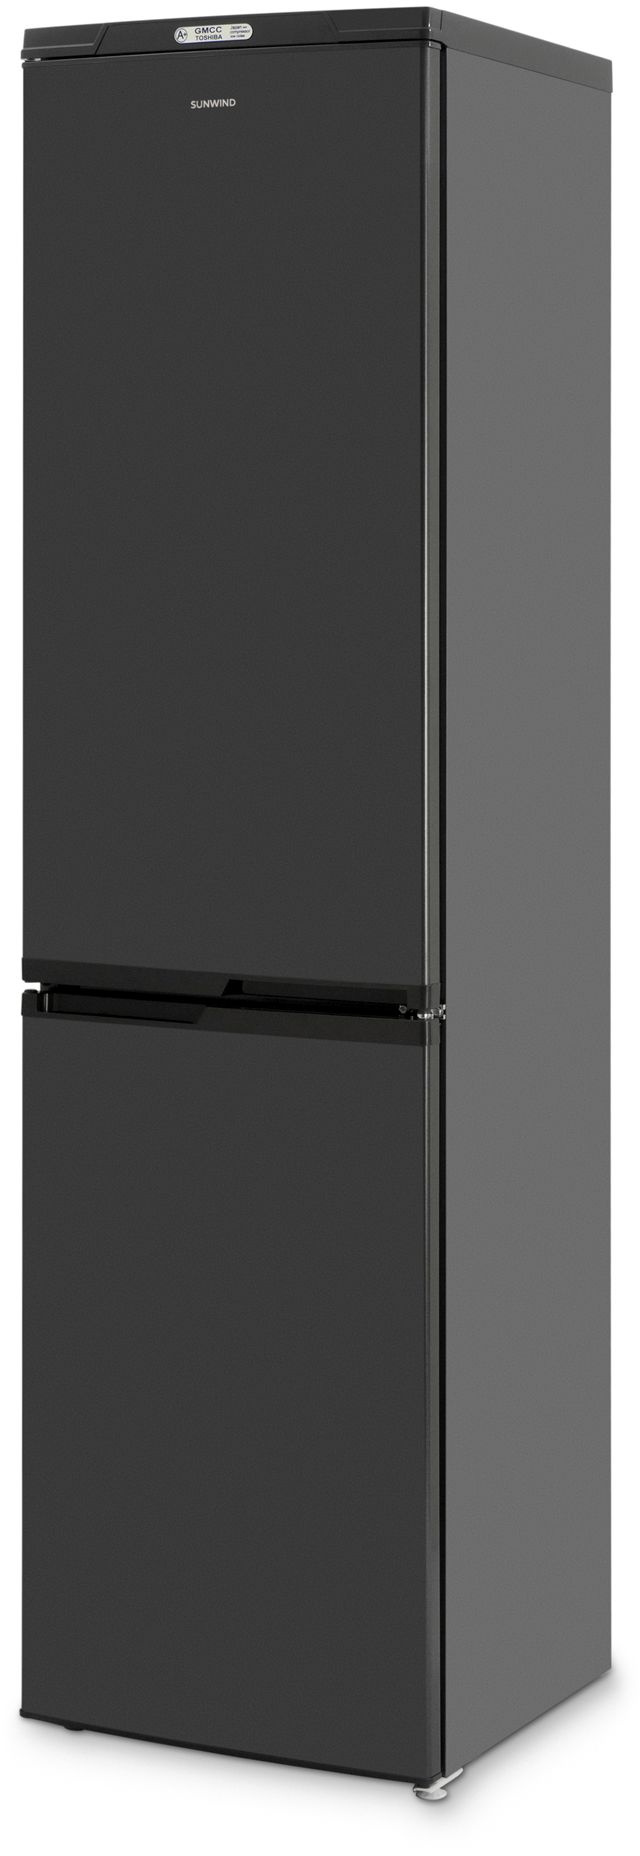 Холодильник Sunwind SCC410 черный